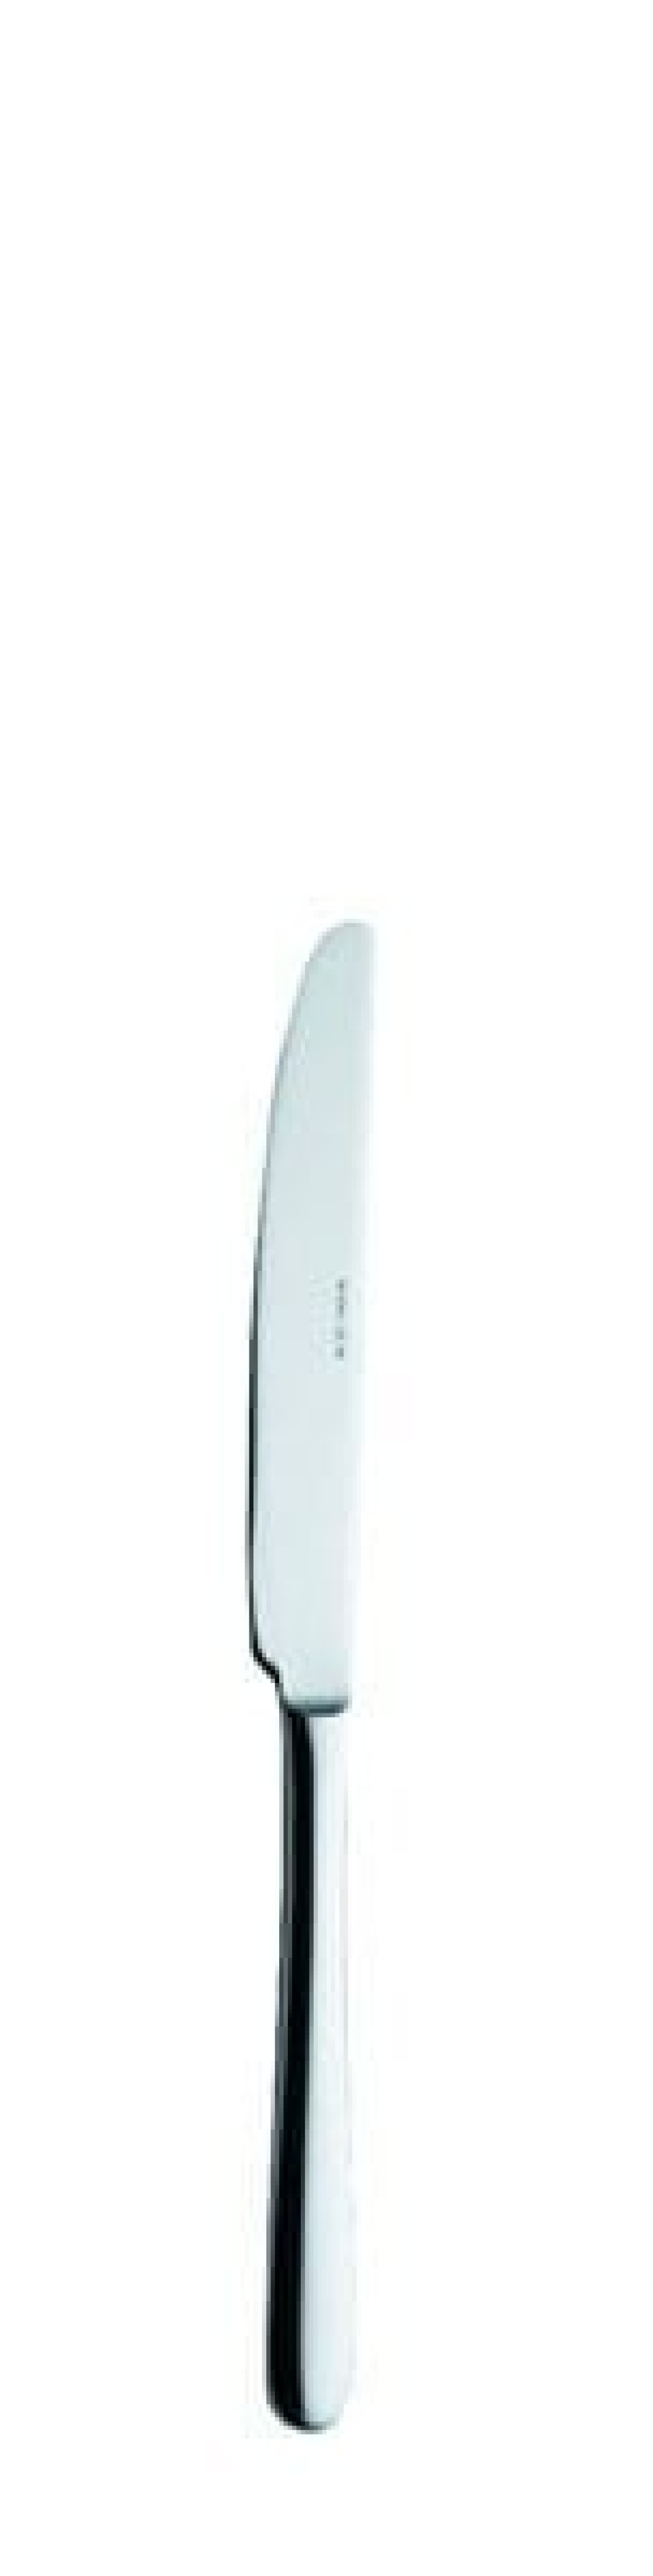 Nóż deserowy Anna, 190 mm w grupie Nakrycie stołu / Sztućce / Noże w The Kitchen Lab (1284-14145)